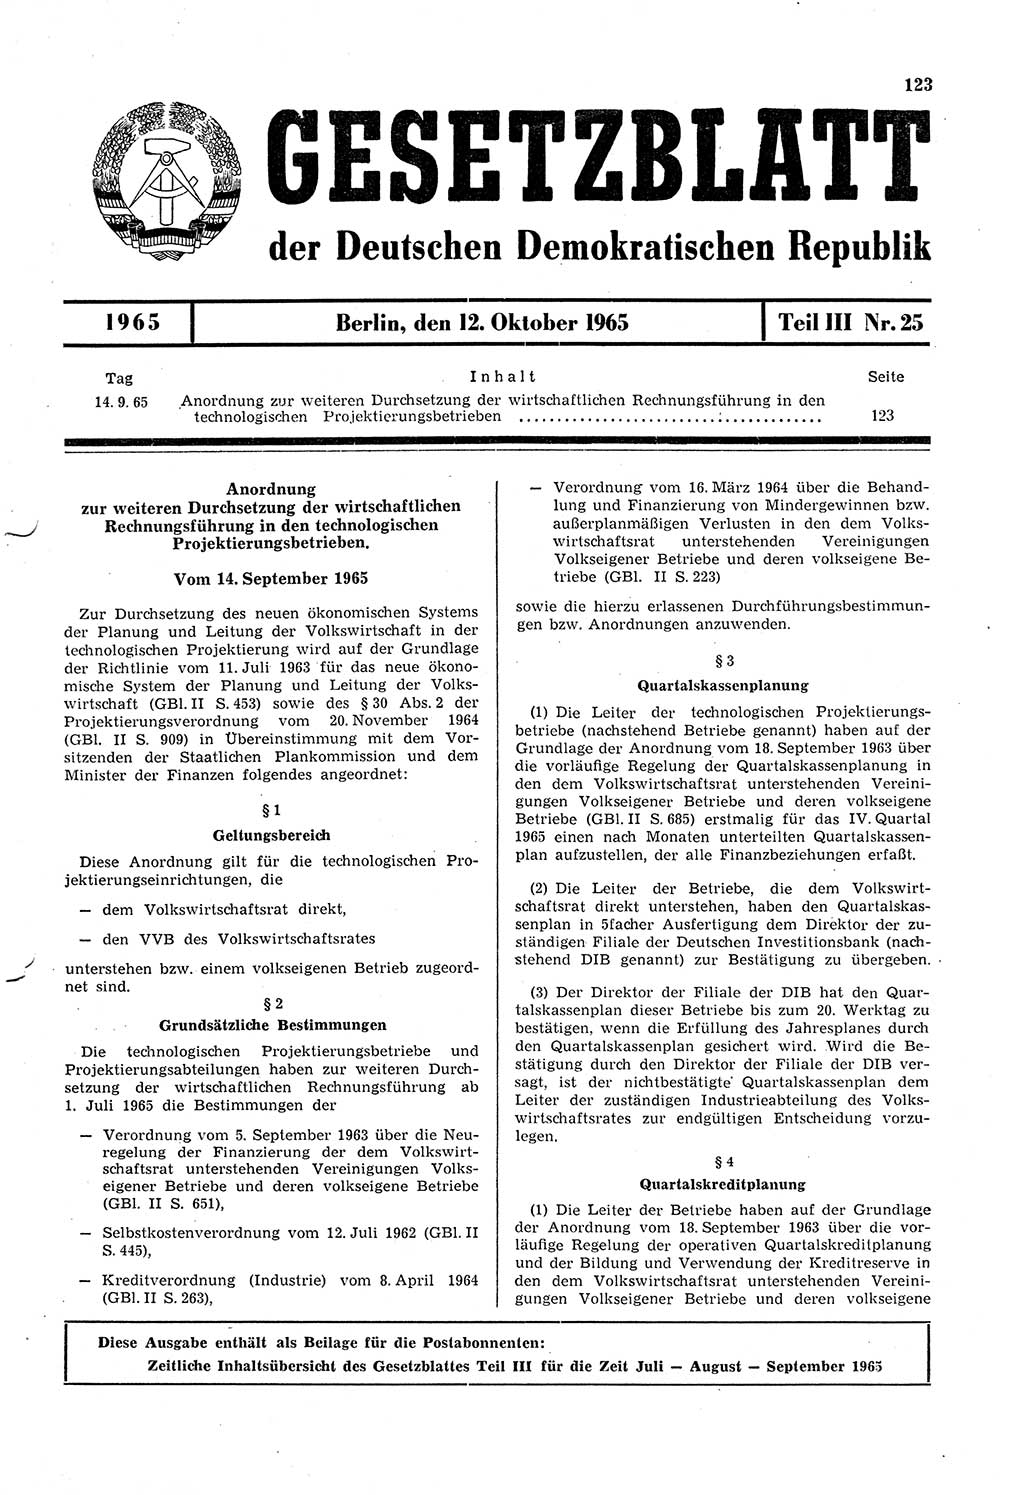 Gesetzblatt (GBl.) der Deutschen Demokratischen Republik (DDR) Teil ⅠⅠⅠ 1965, Seite 123 (GBl. DDR ⅠⅠⅠ 1965, S. 123)